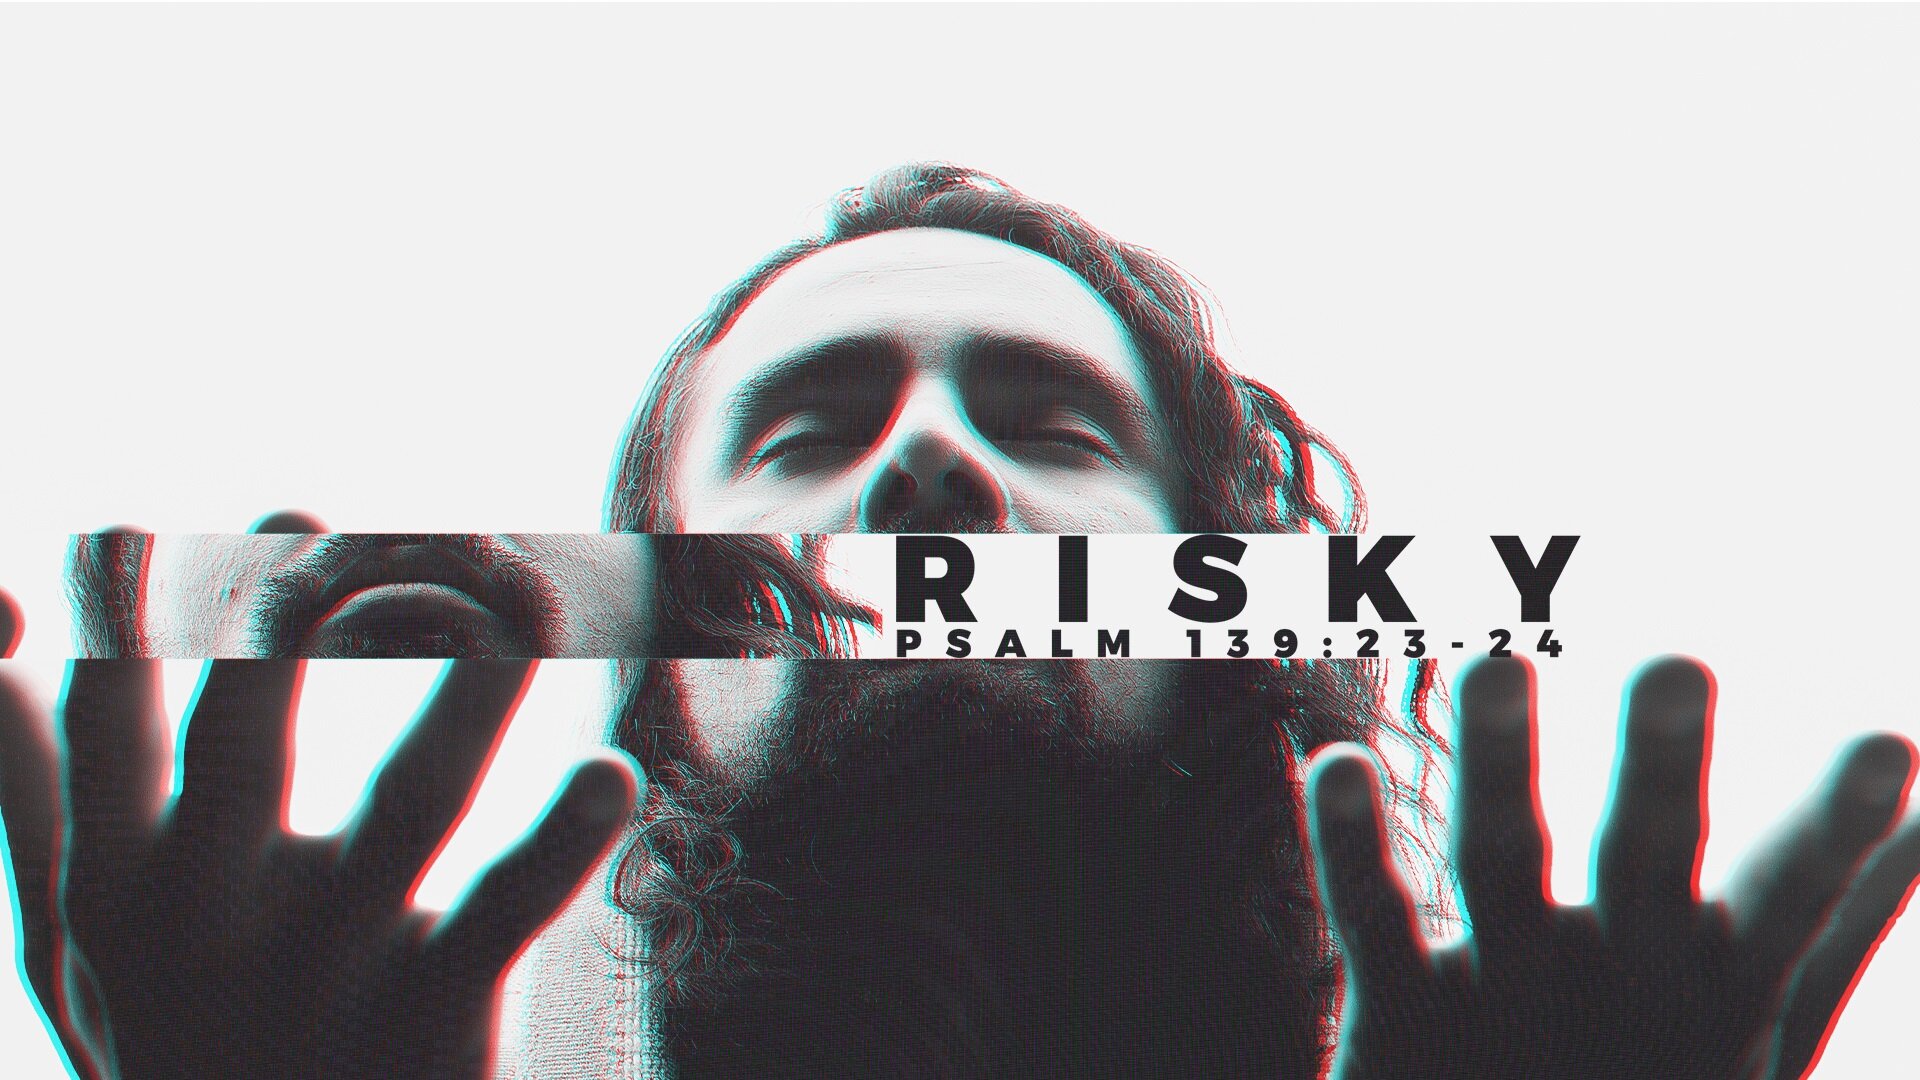 Risky